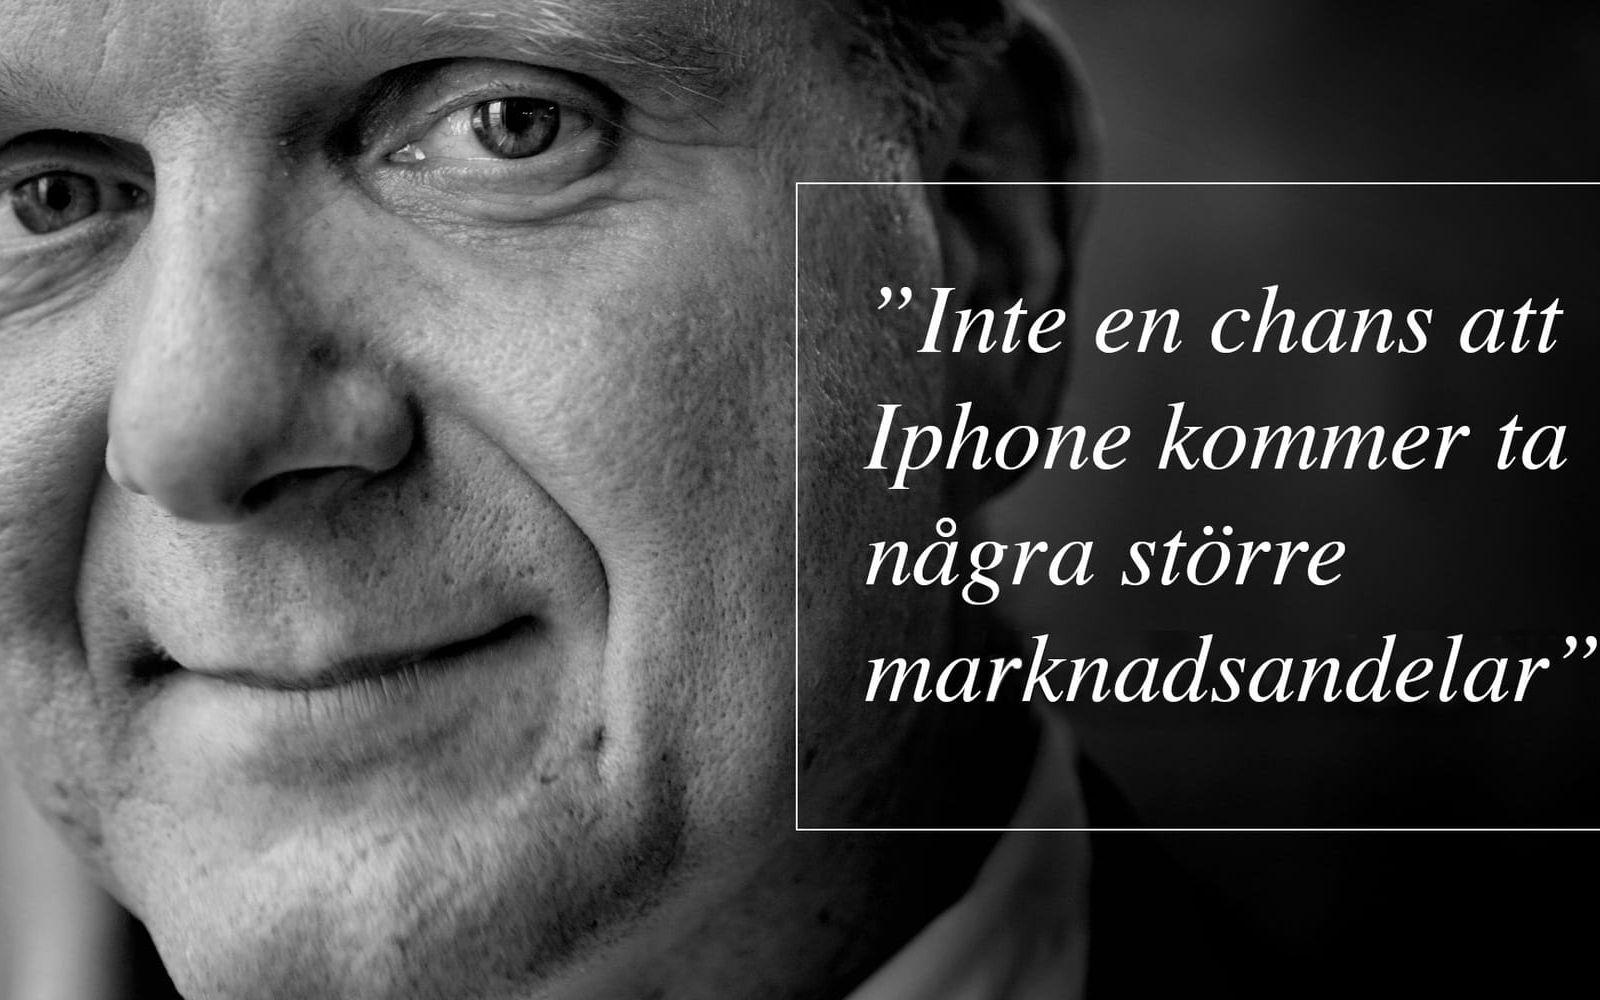 Steve Ballmer, VD på Microsoft, 2007. Han påpekade även att Iphone inte lämpar sig särskilt bra för epost eftersom telefonen saknar fysiskt tangentbord. Foto: TT